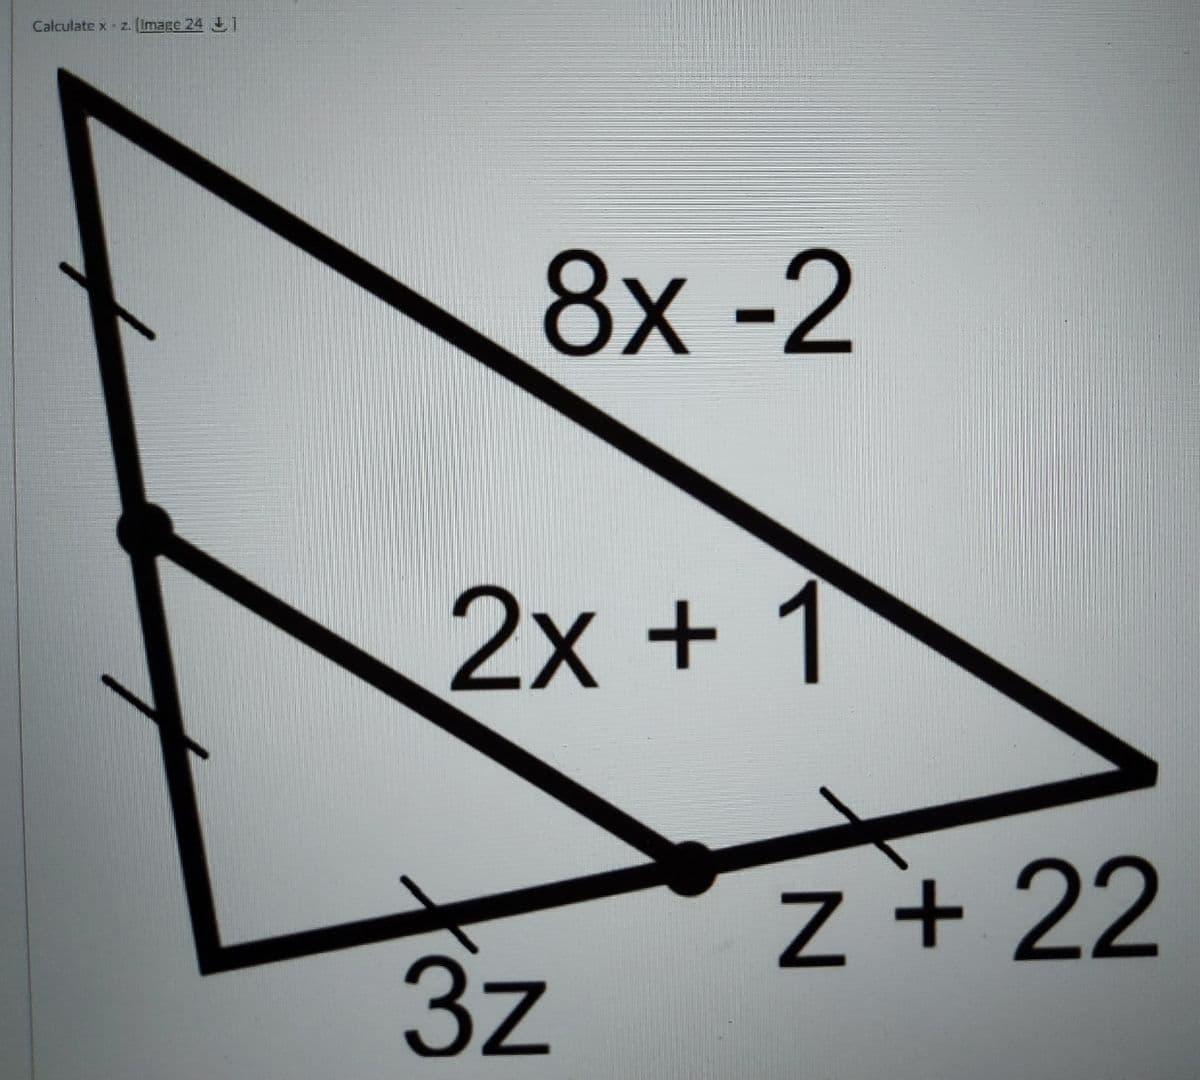 Calculate x - z. (Image 24 J1
8х -2
2x +1
Z + 22
3z
